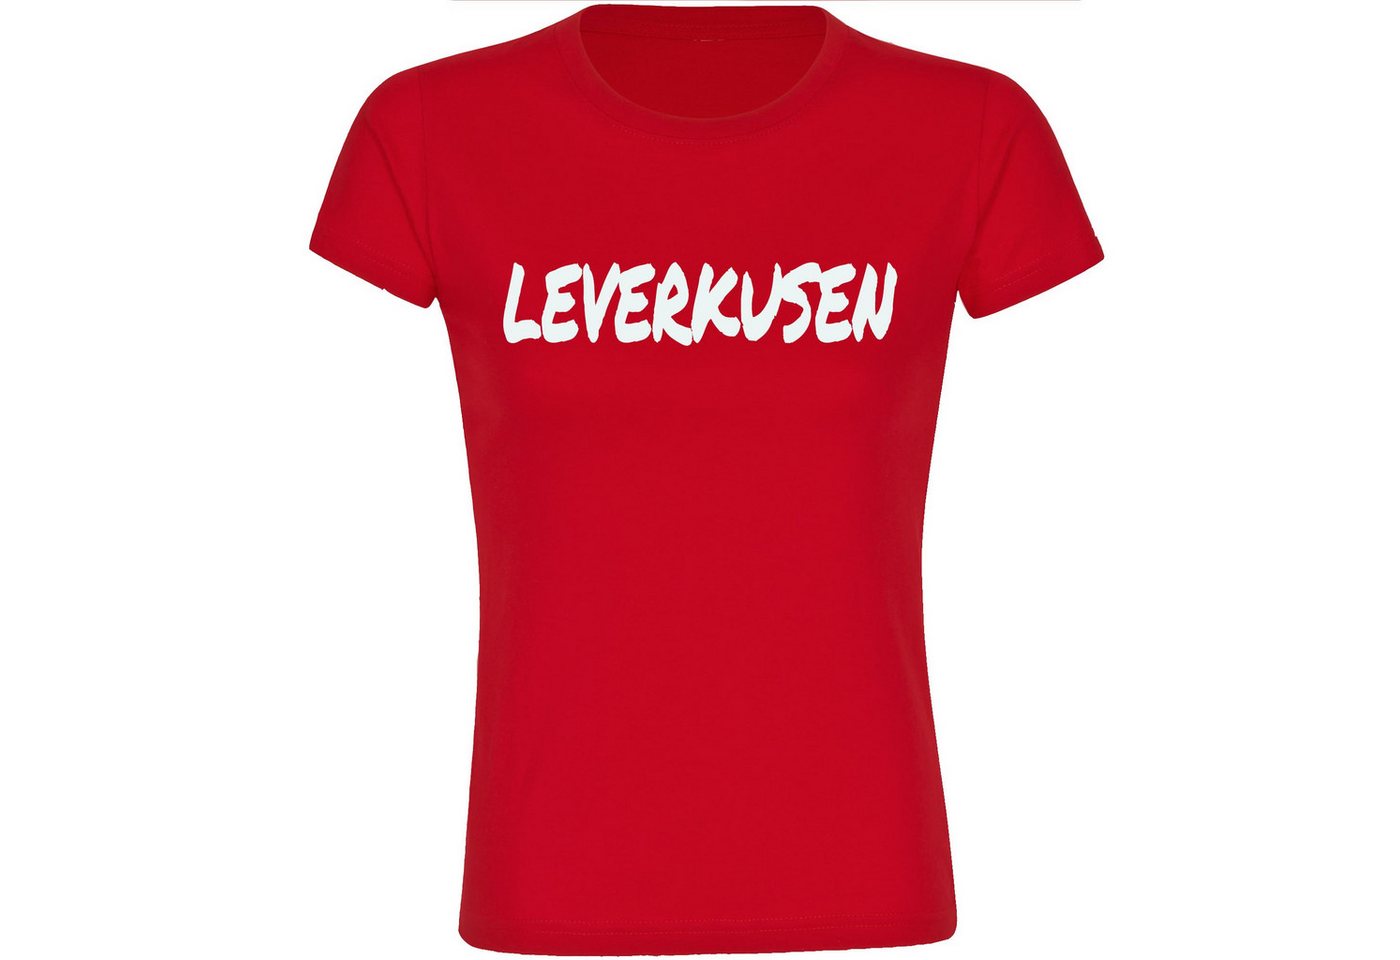 multifanshop T-Shirt Damen Leverkusen - Textmarker - Frauen von multifanshop